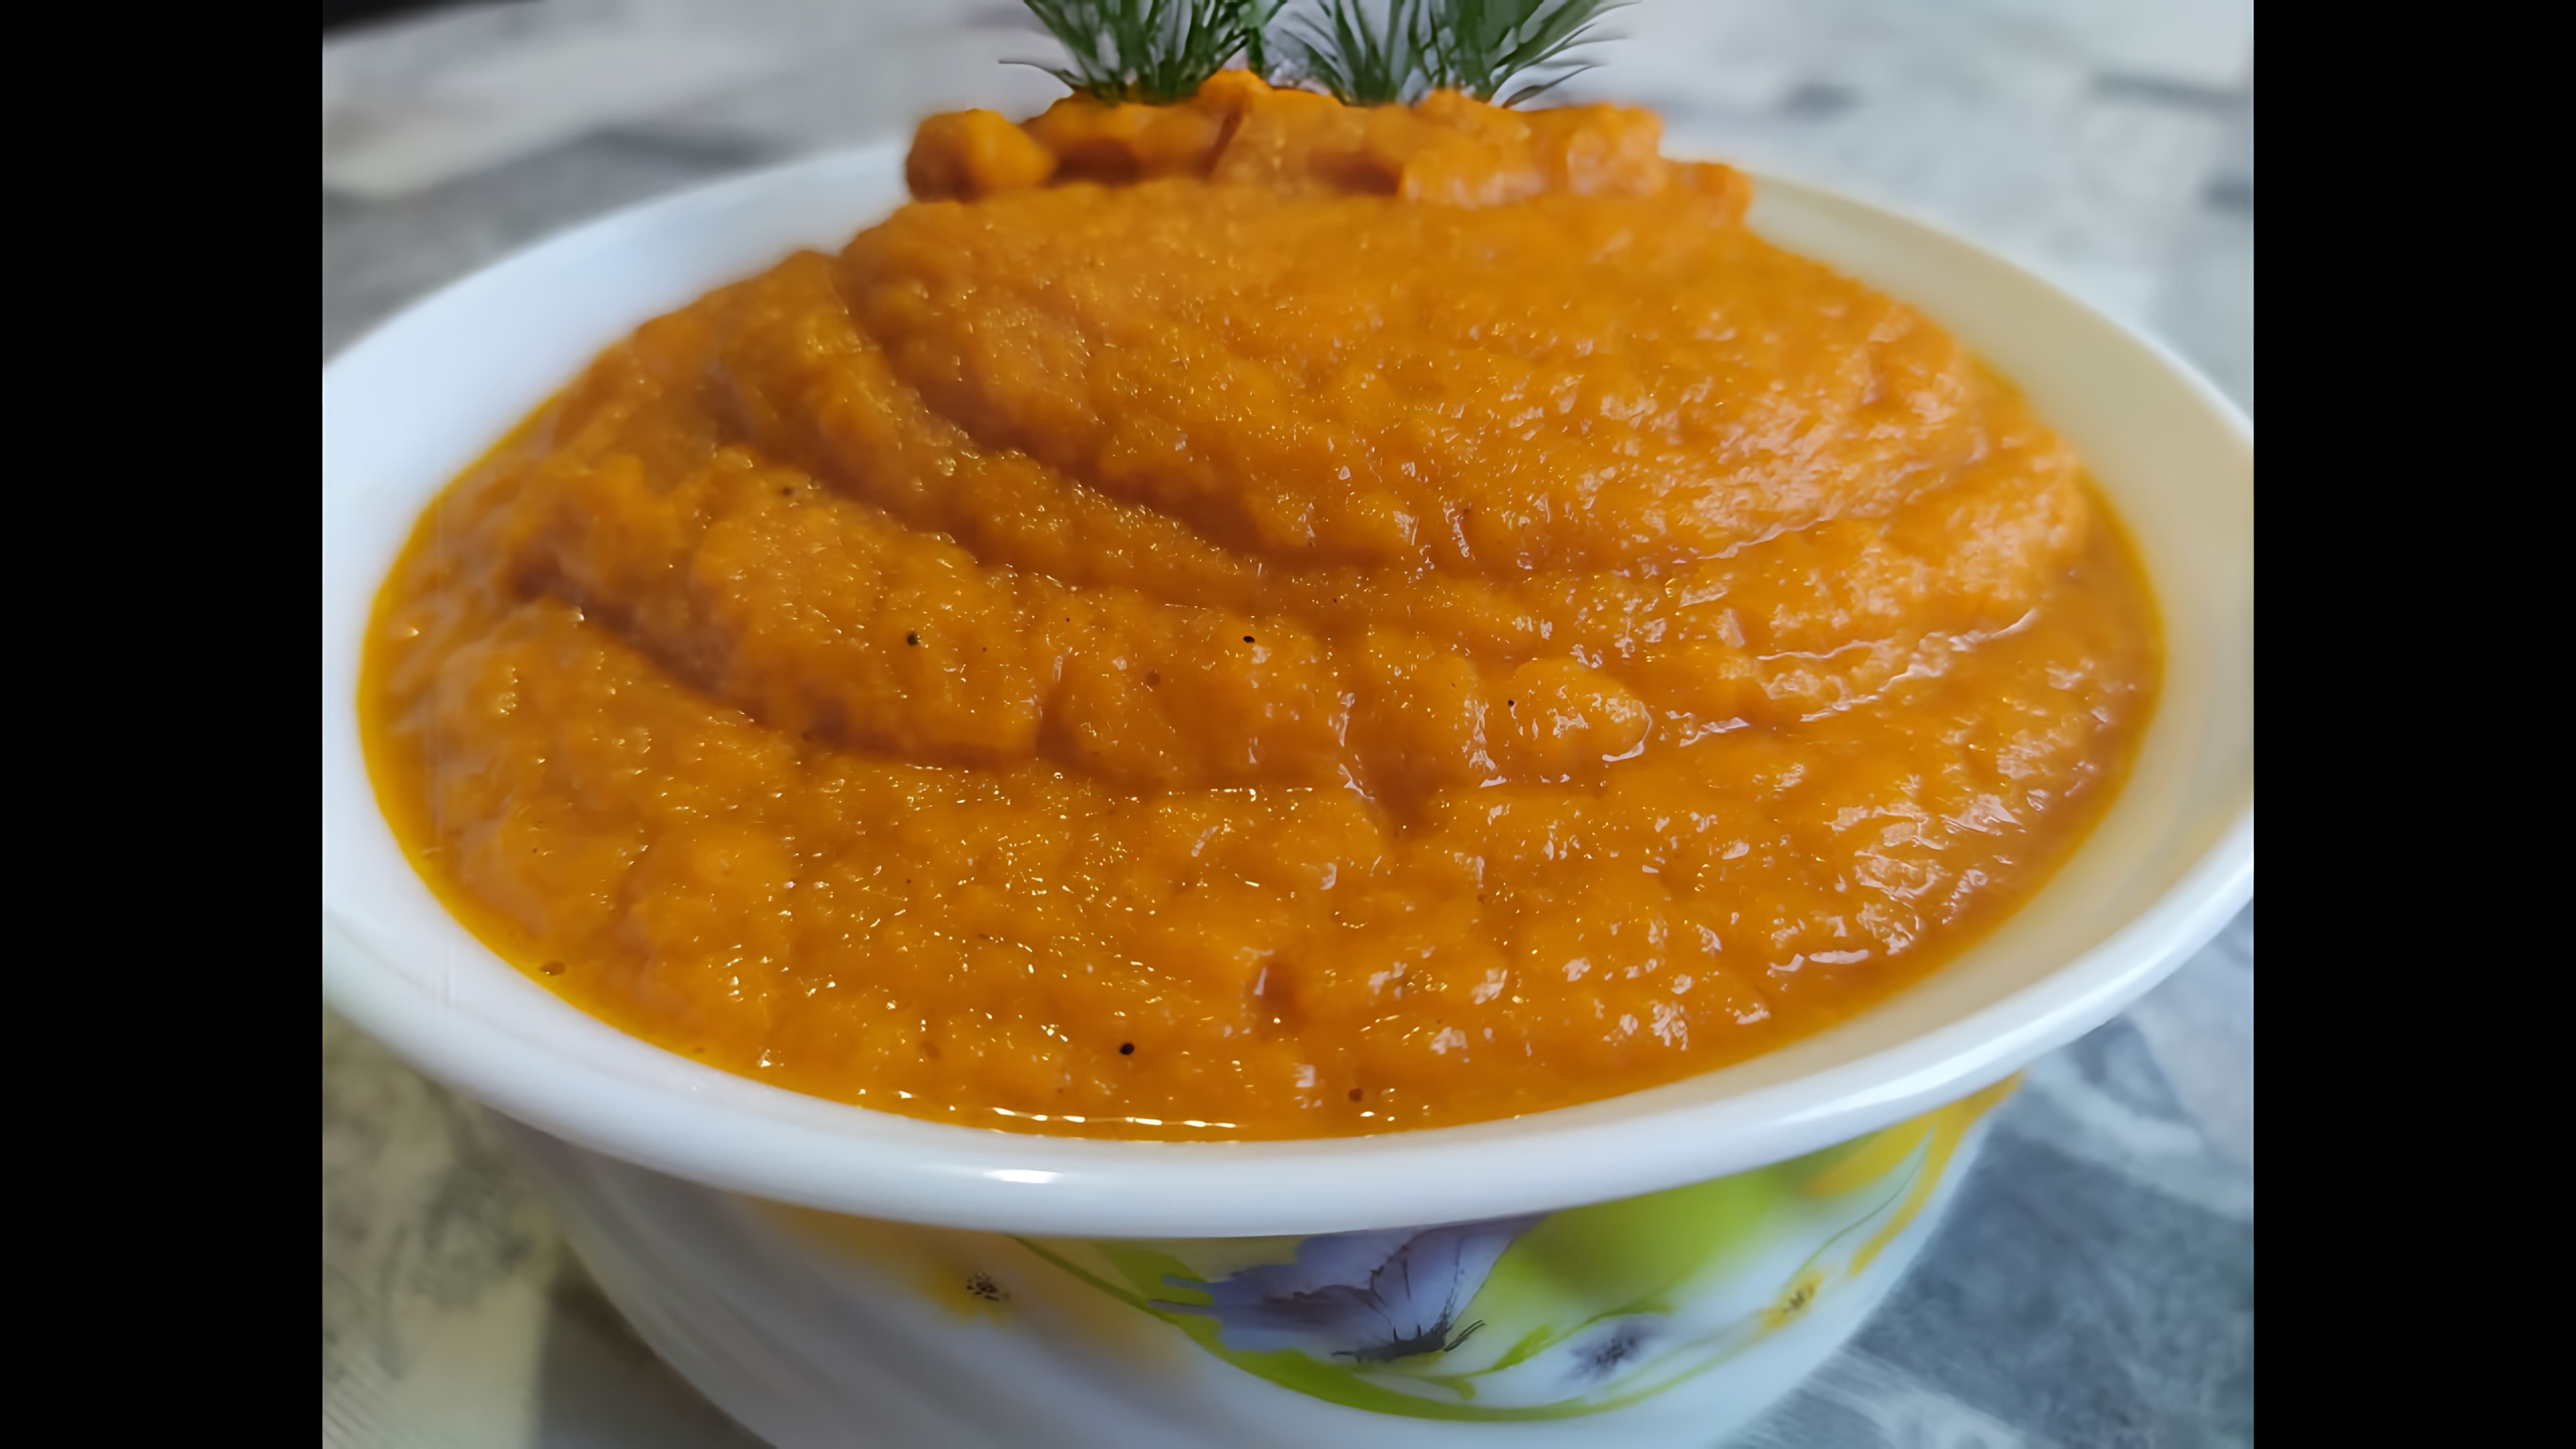 В этом видео демонстрируется процесс приготовления морковной икры